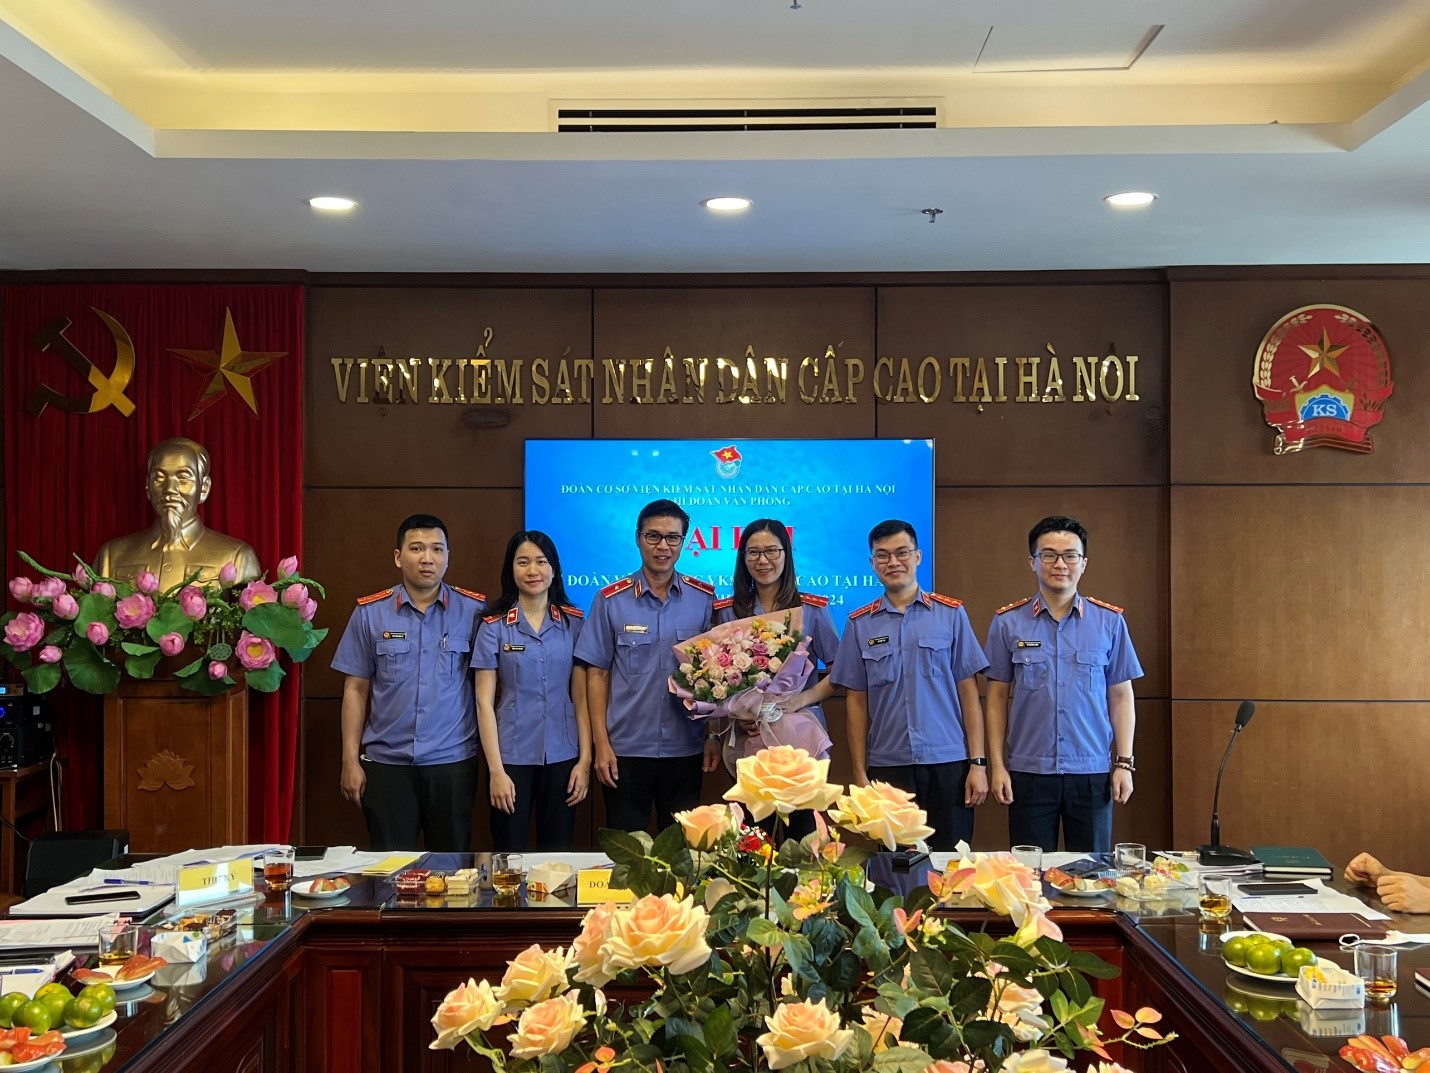 Chi đoàn Văn phòng VKSND cấp cao tại Hà Nội tổ chức thành công Đại hội Chi đoàn lần thứ II, nhiệm kỳ 2022 - 2024